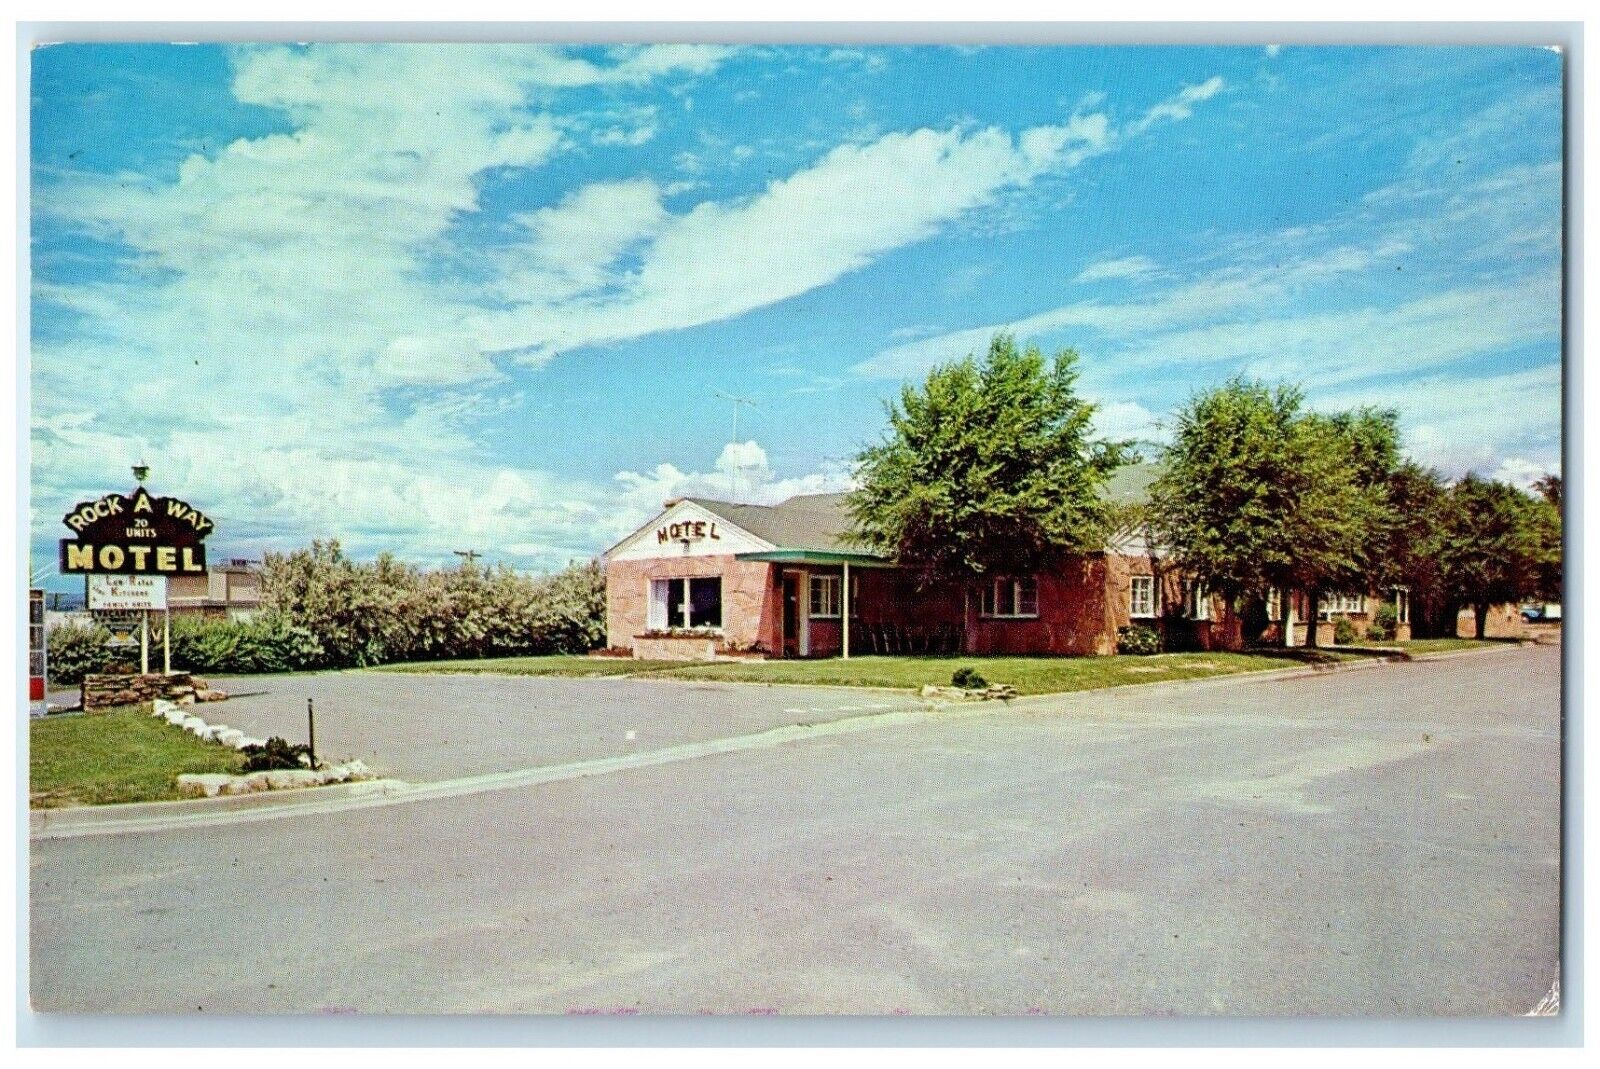 c1960's Rock A Way Motel Roadside Cortez Colorado CO Unposted Vintage Postcard